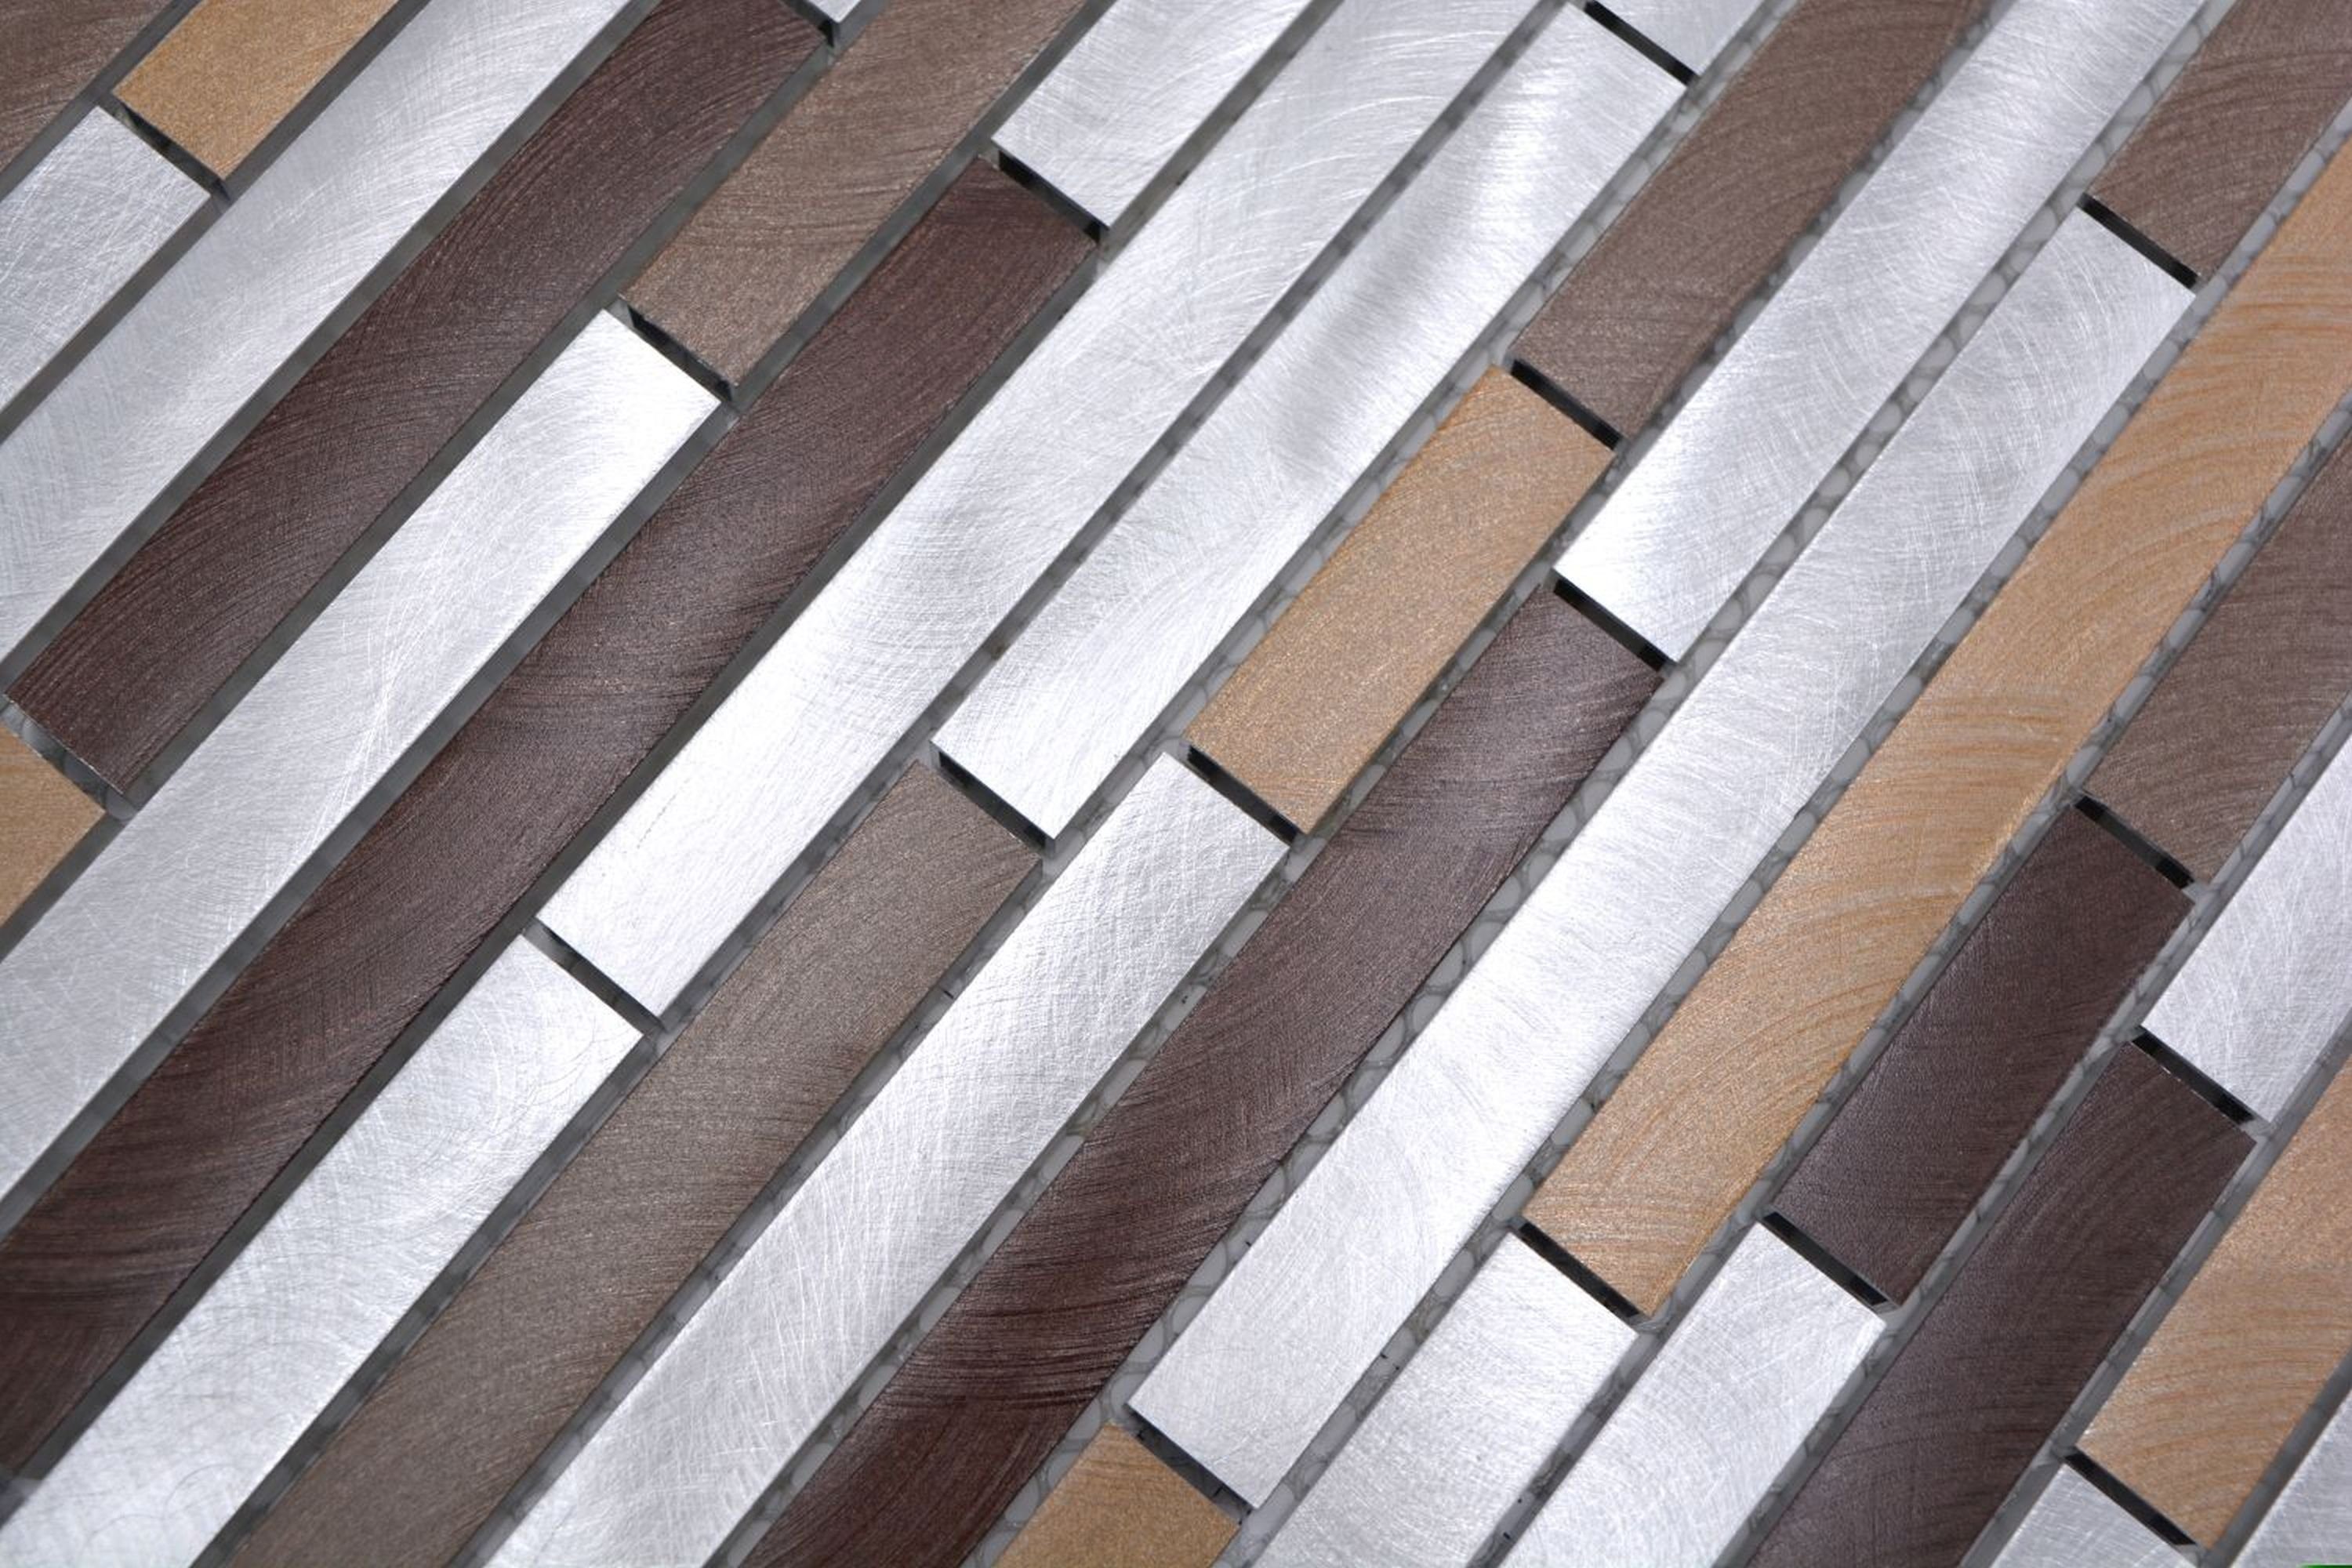 Mosani Mosaikfliesen Mosaik Verbund Küchenwand Fliese braun kupfer Aluminium beige